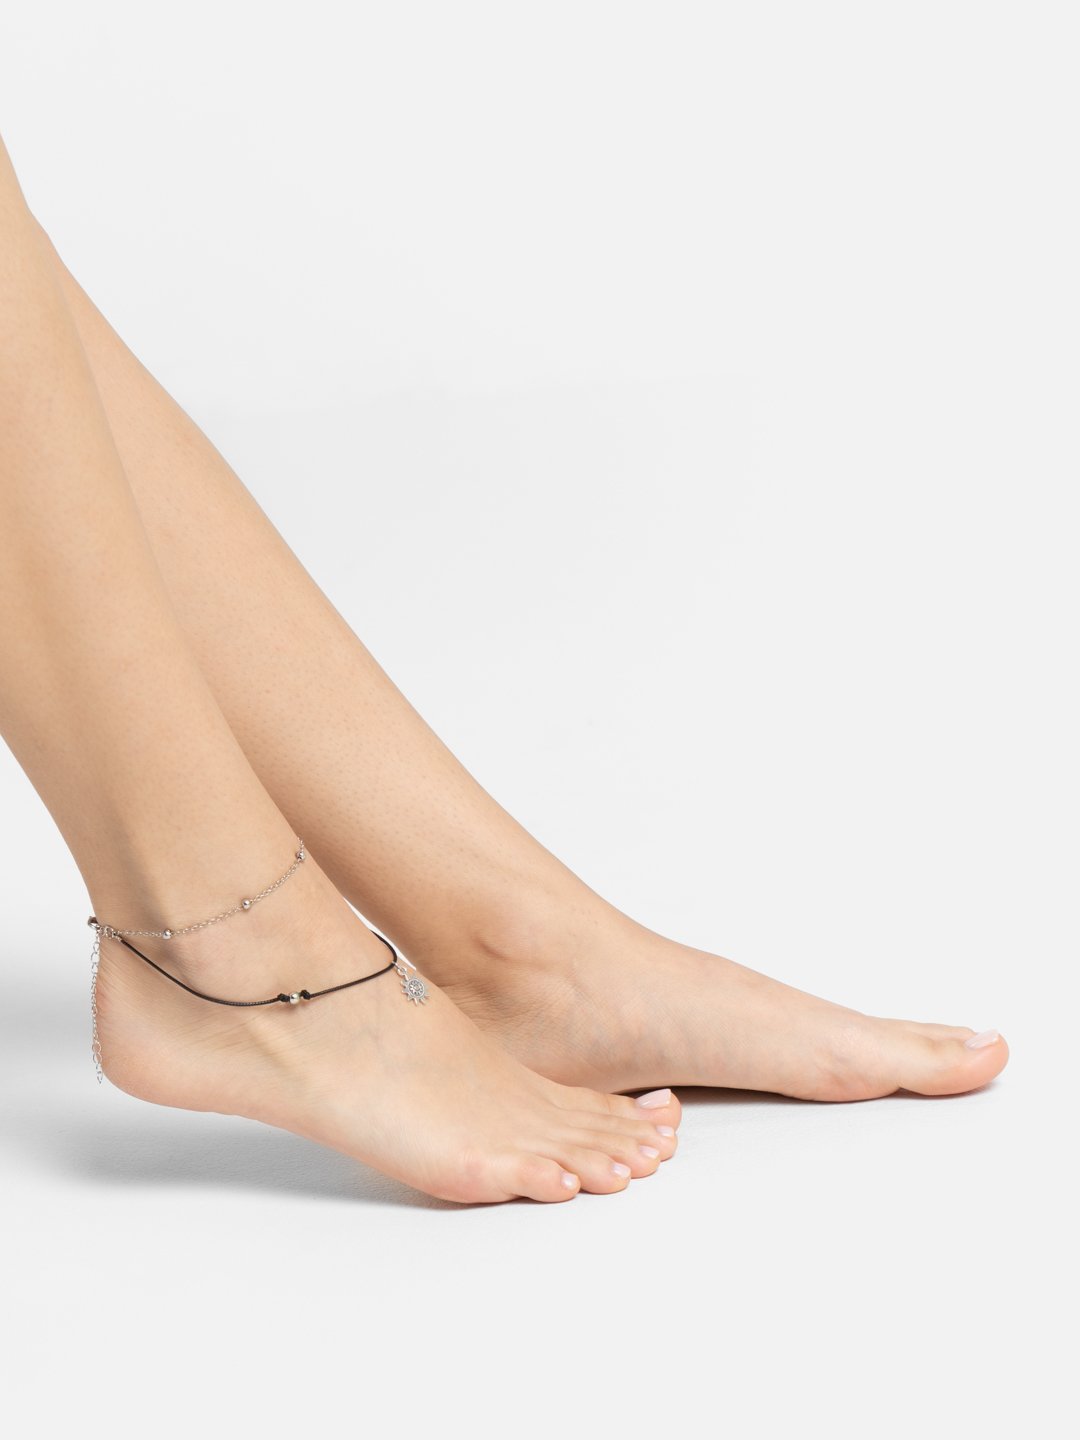 Женский многослойный браслет-анклет для ног купить по цене 65.89 ₽ винтернет-магазине KazanExpress